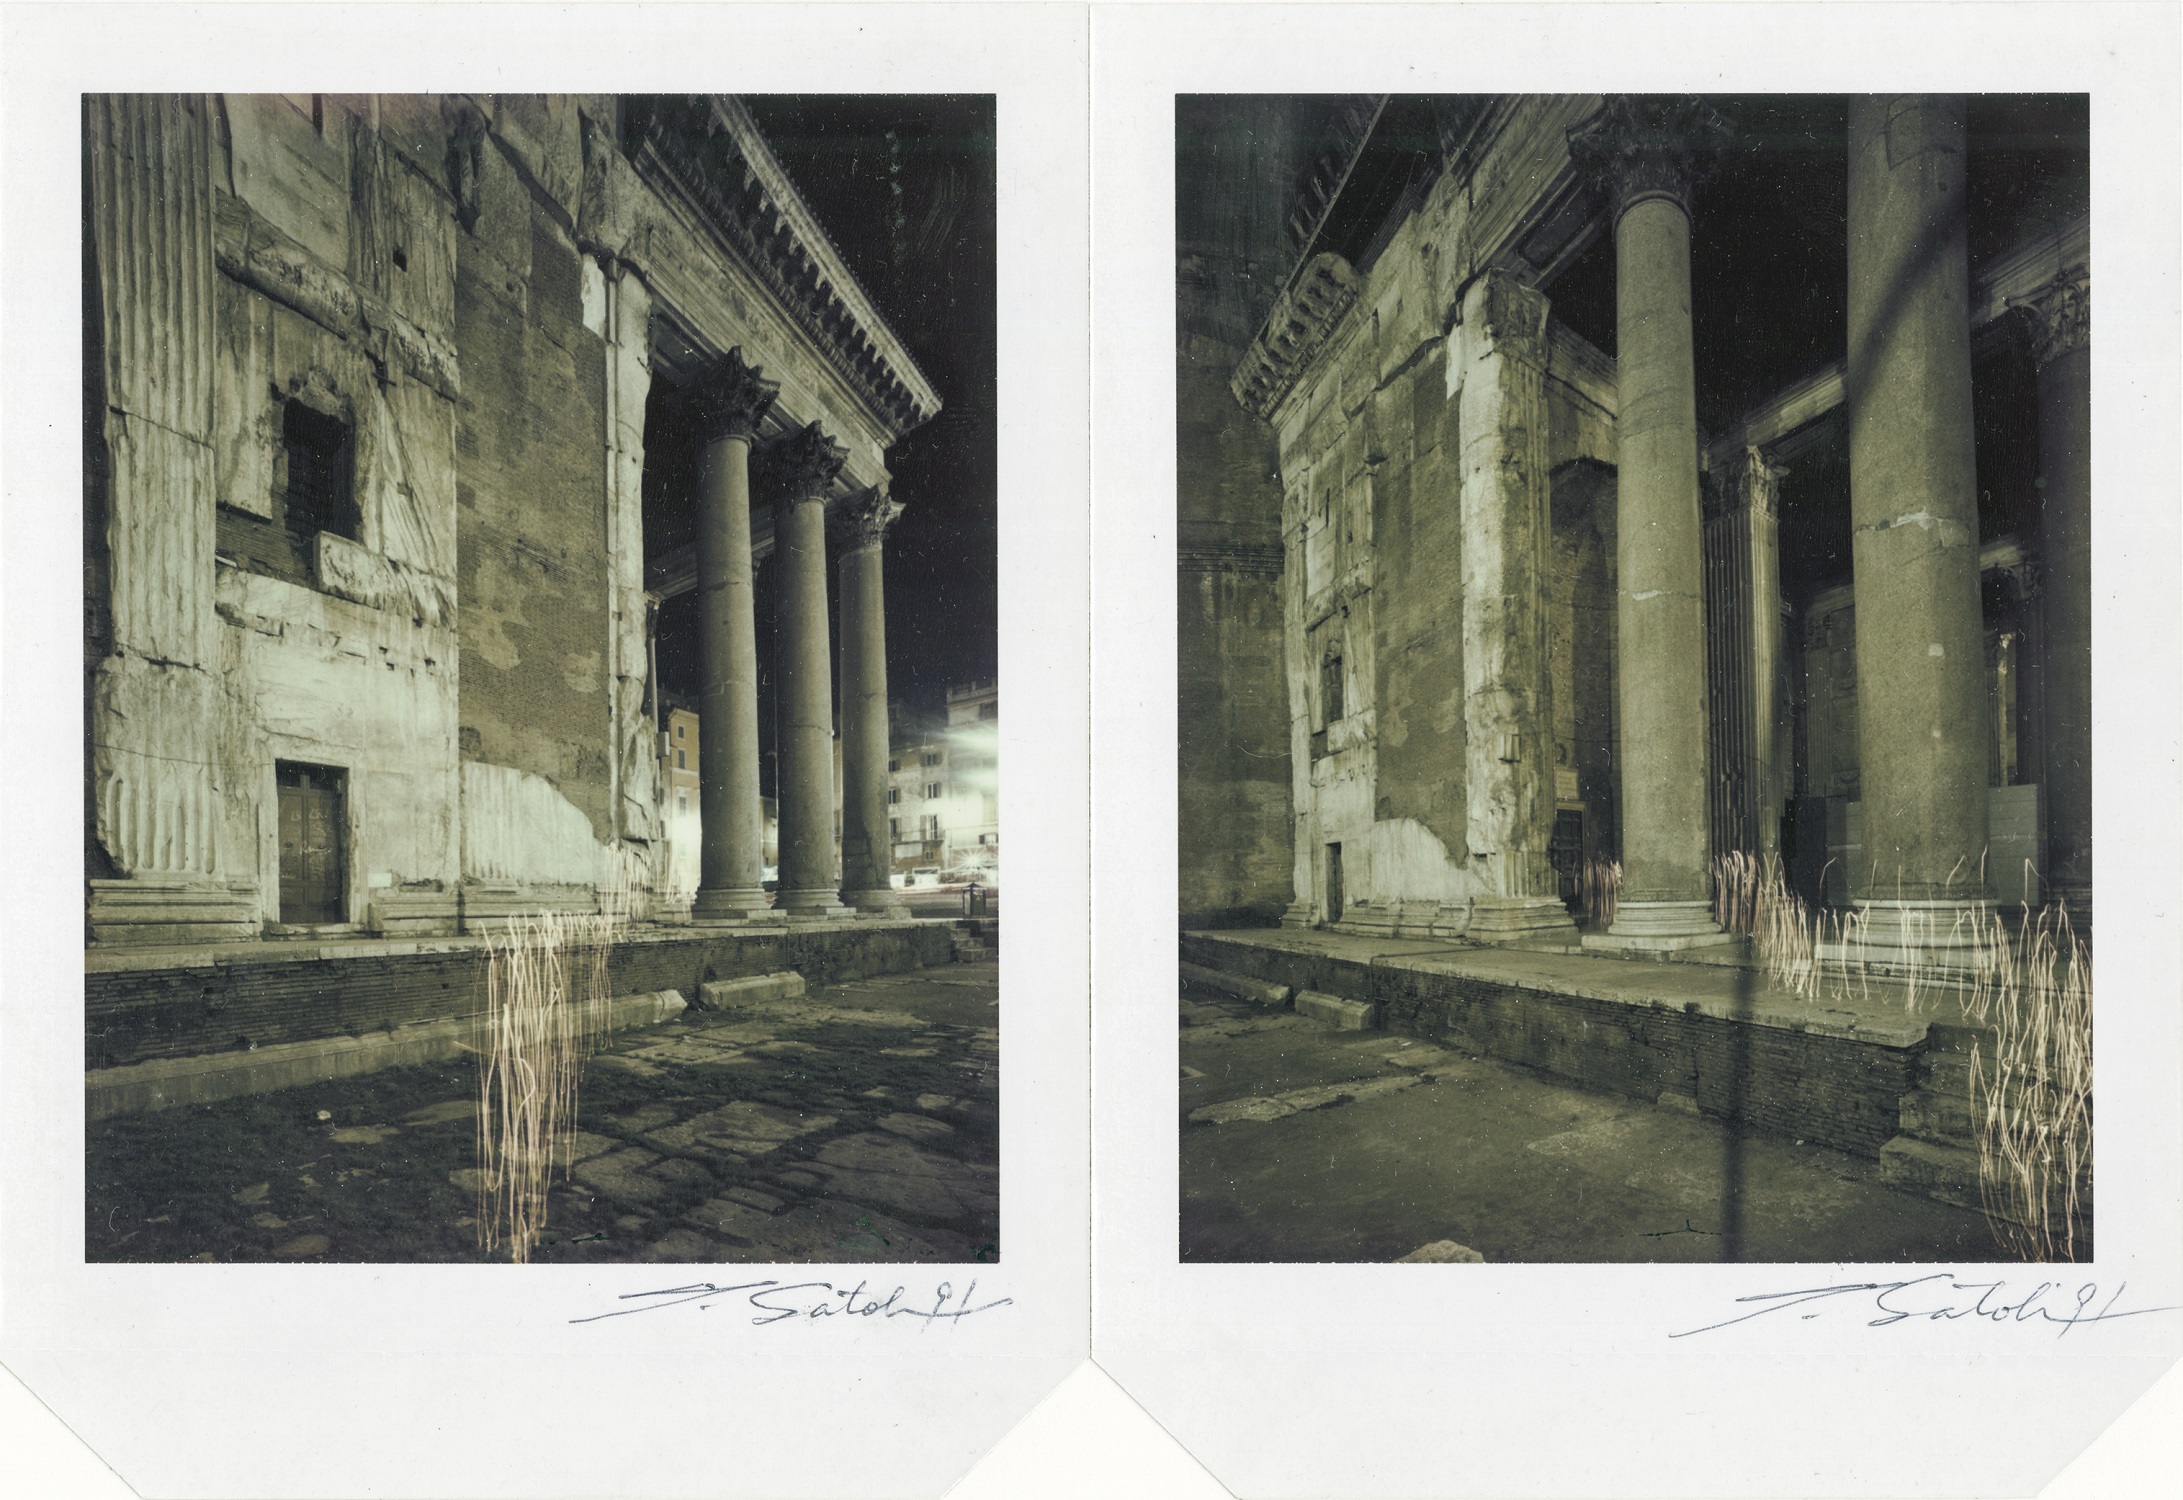 Pantheon (Roma)